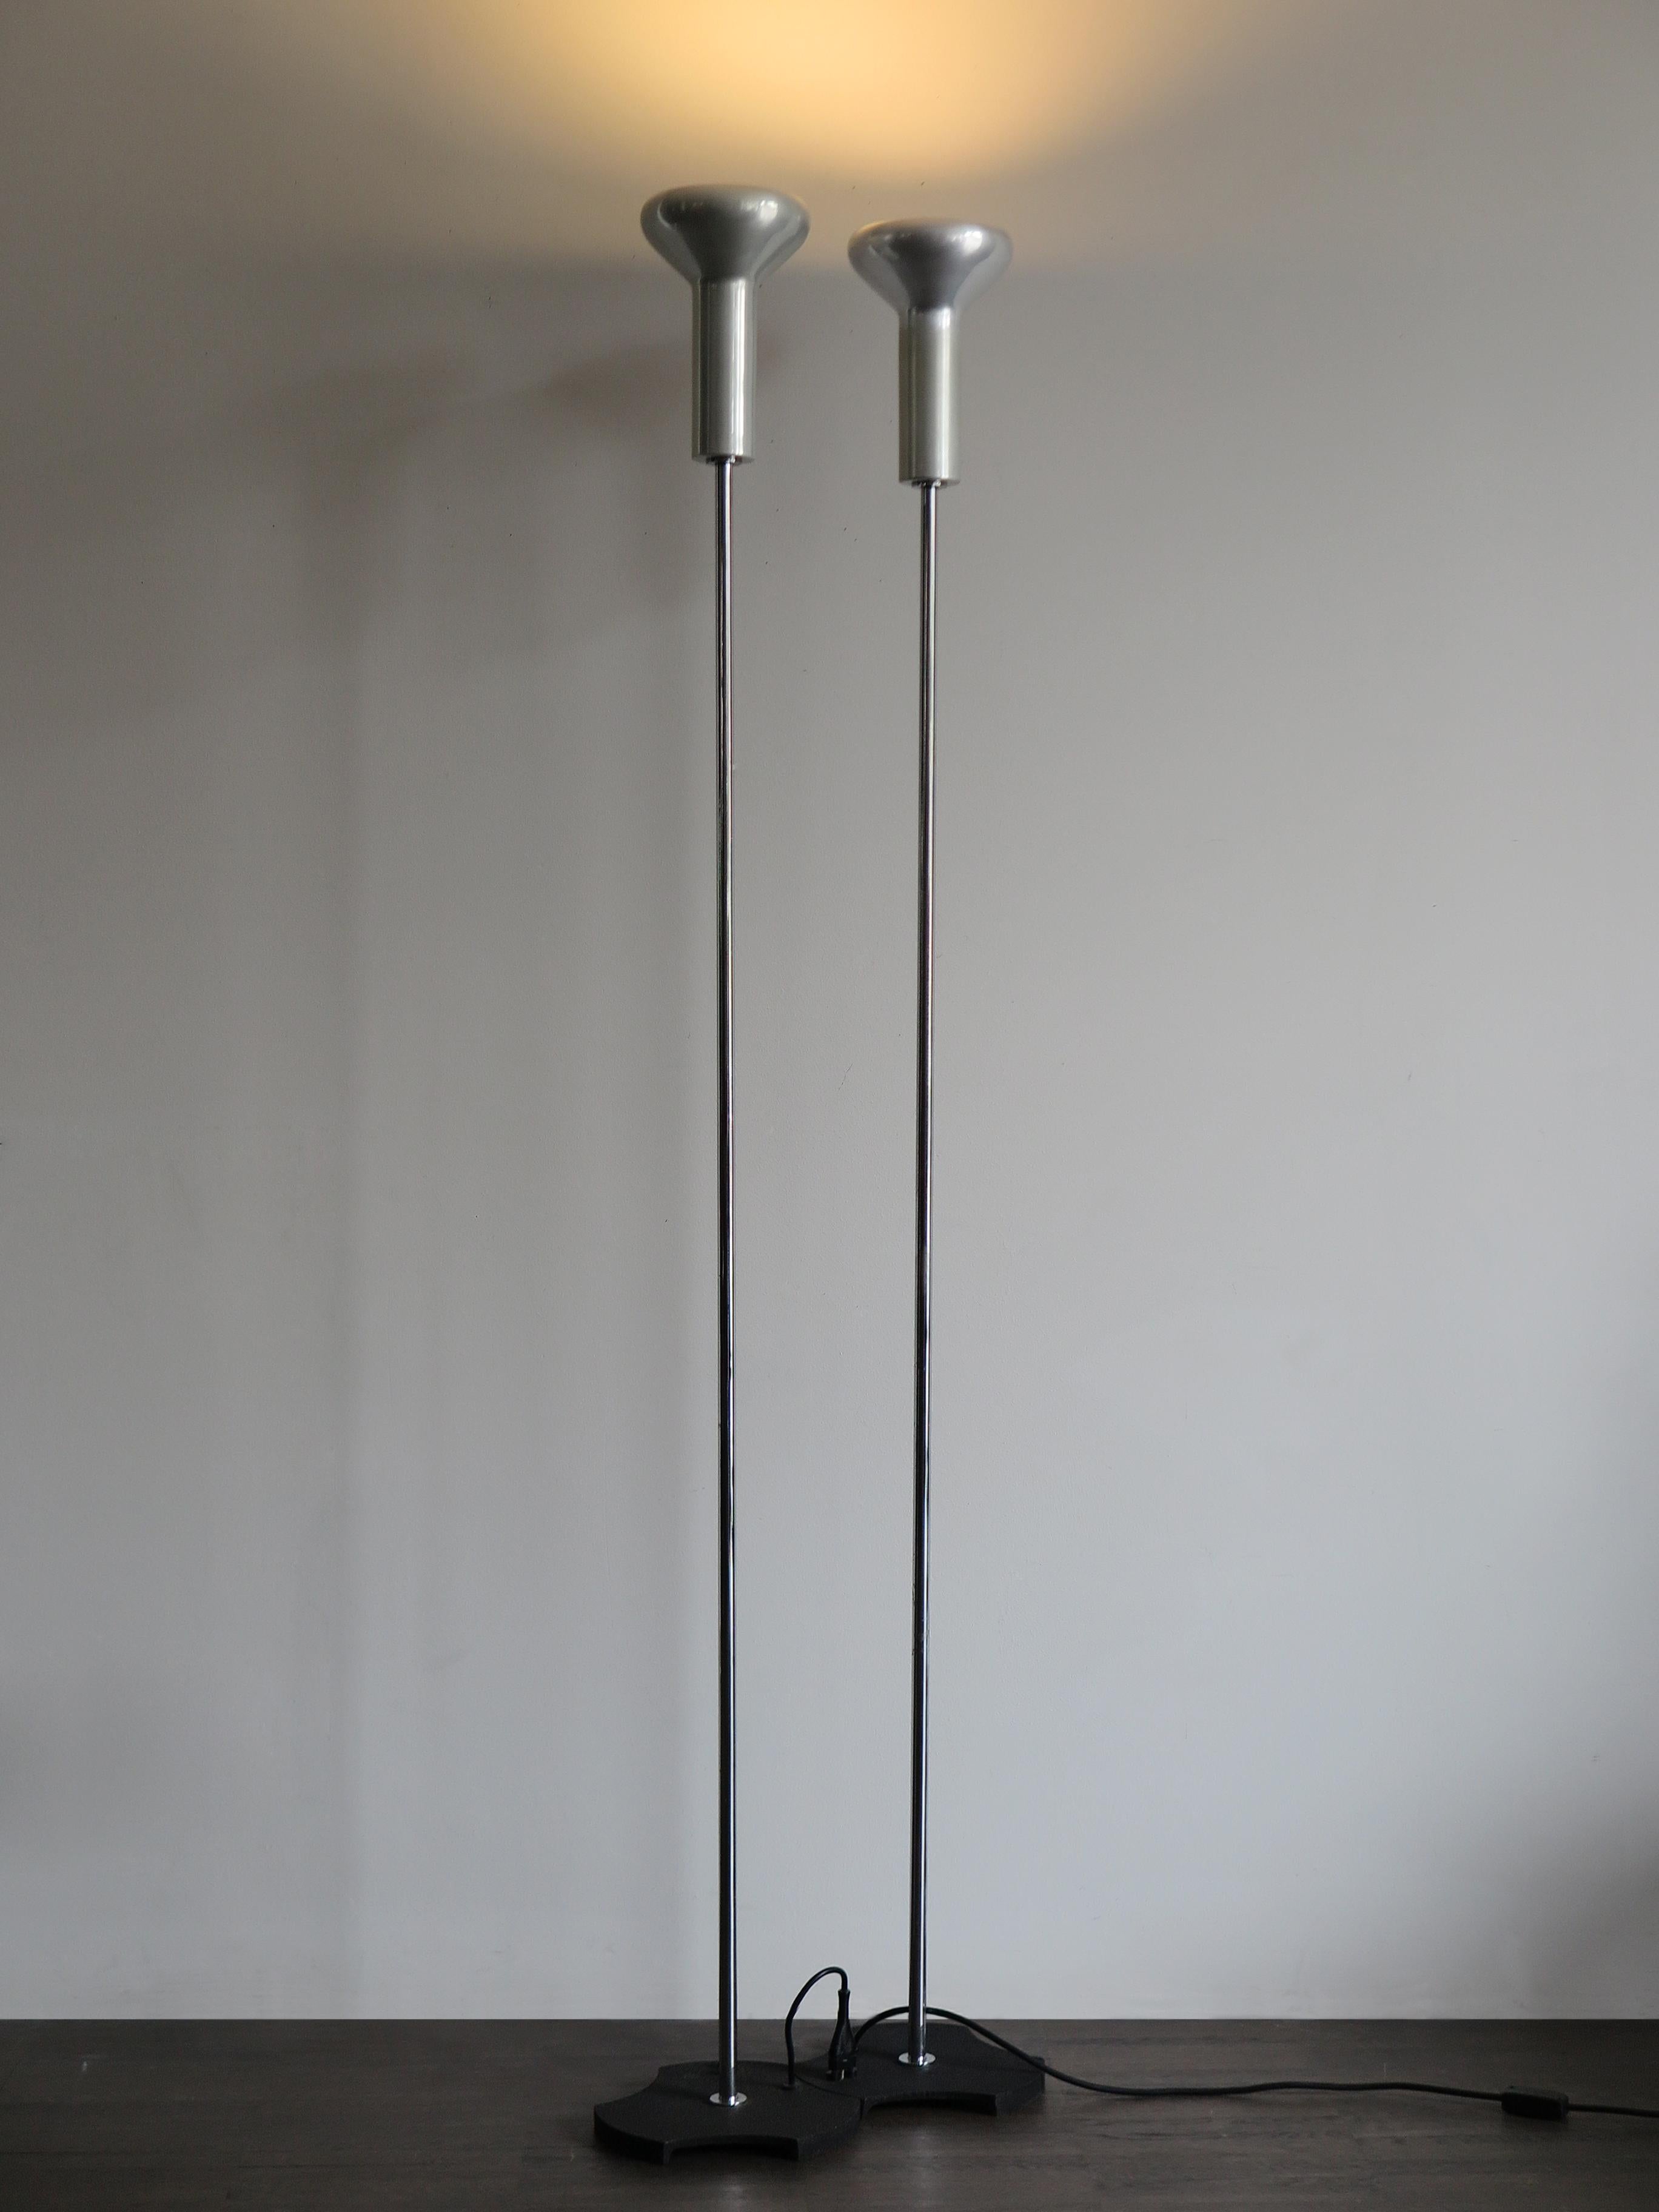 Couple de célèbres lampadaires italiens Mid-Century Modern modèle 1073, connectables électriquement l'un à l'autre, conçus par Gino Sarfatti pour Arteluce en 1956, réflecteurs en aluminium poli, tige en acier chromé et base en